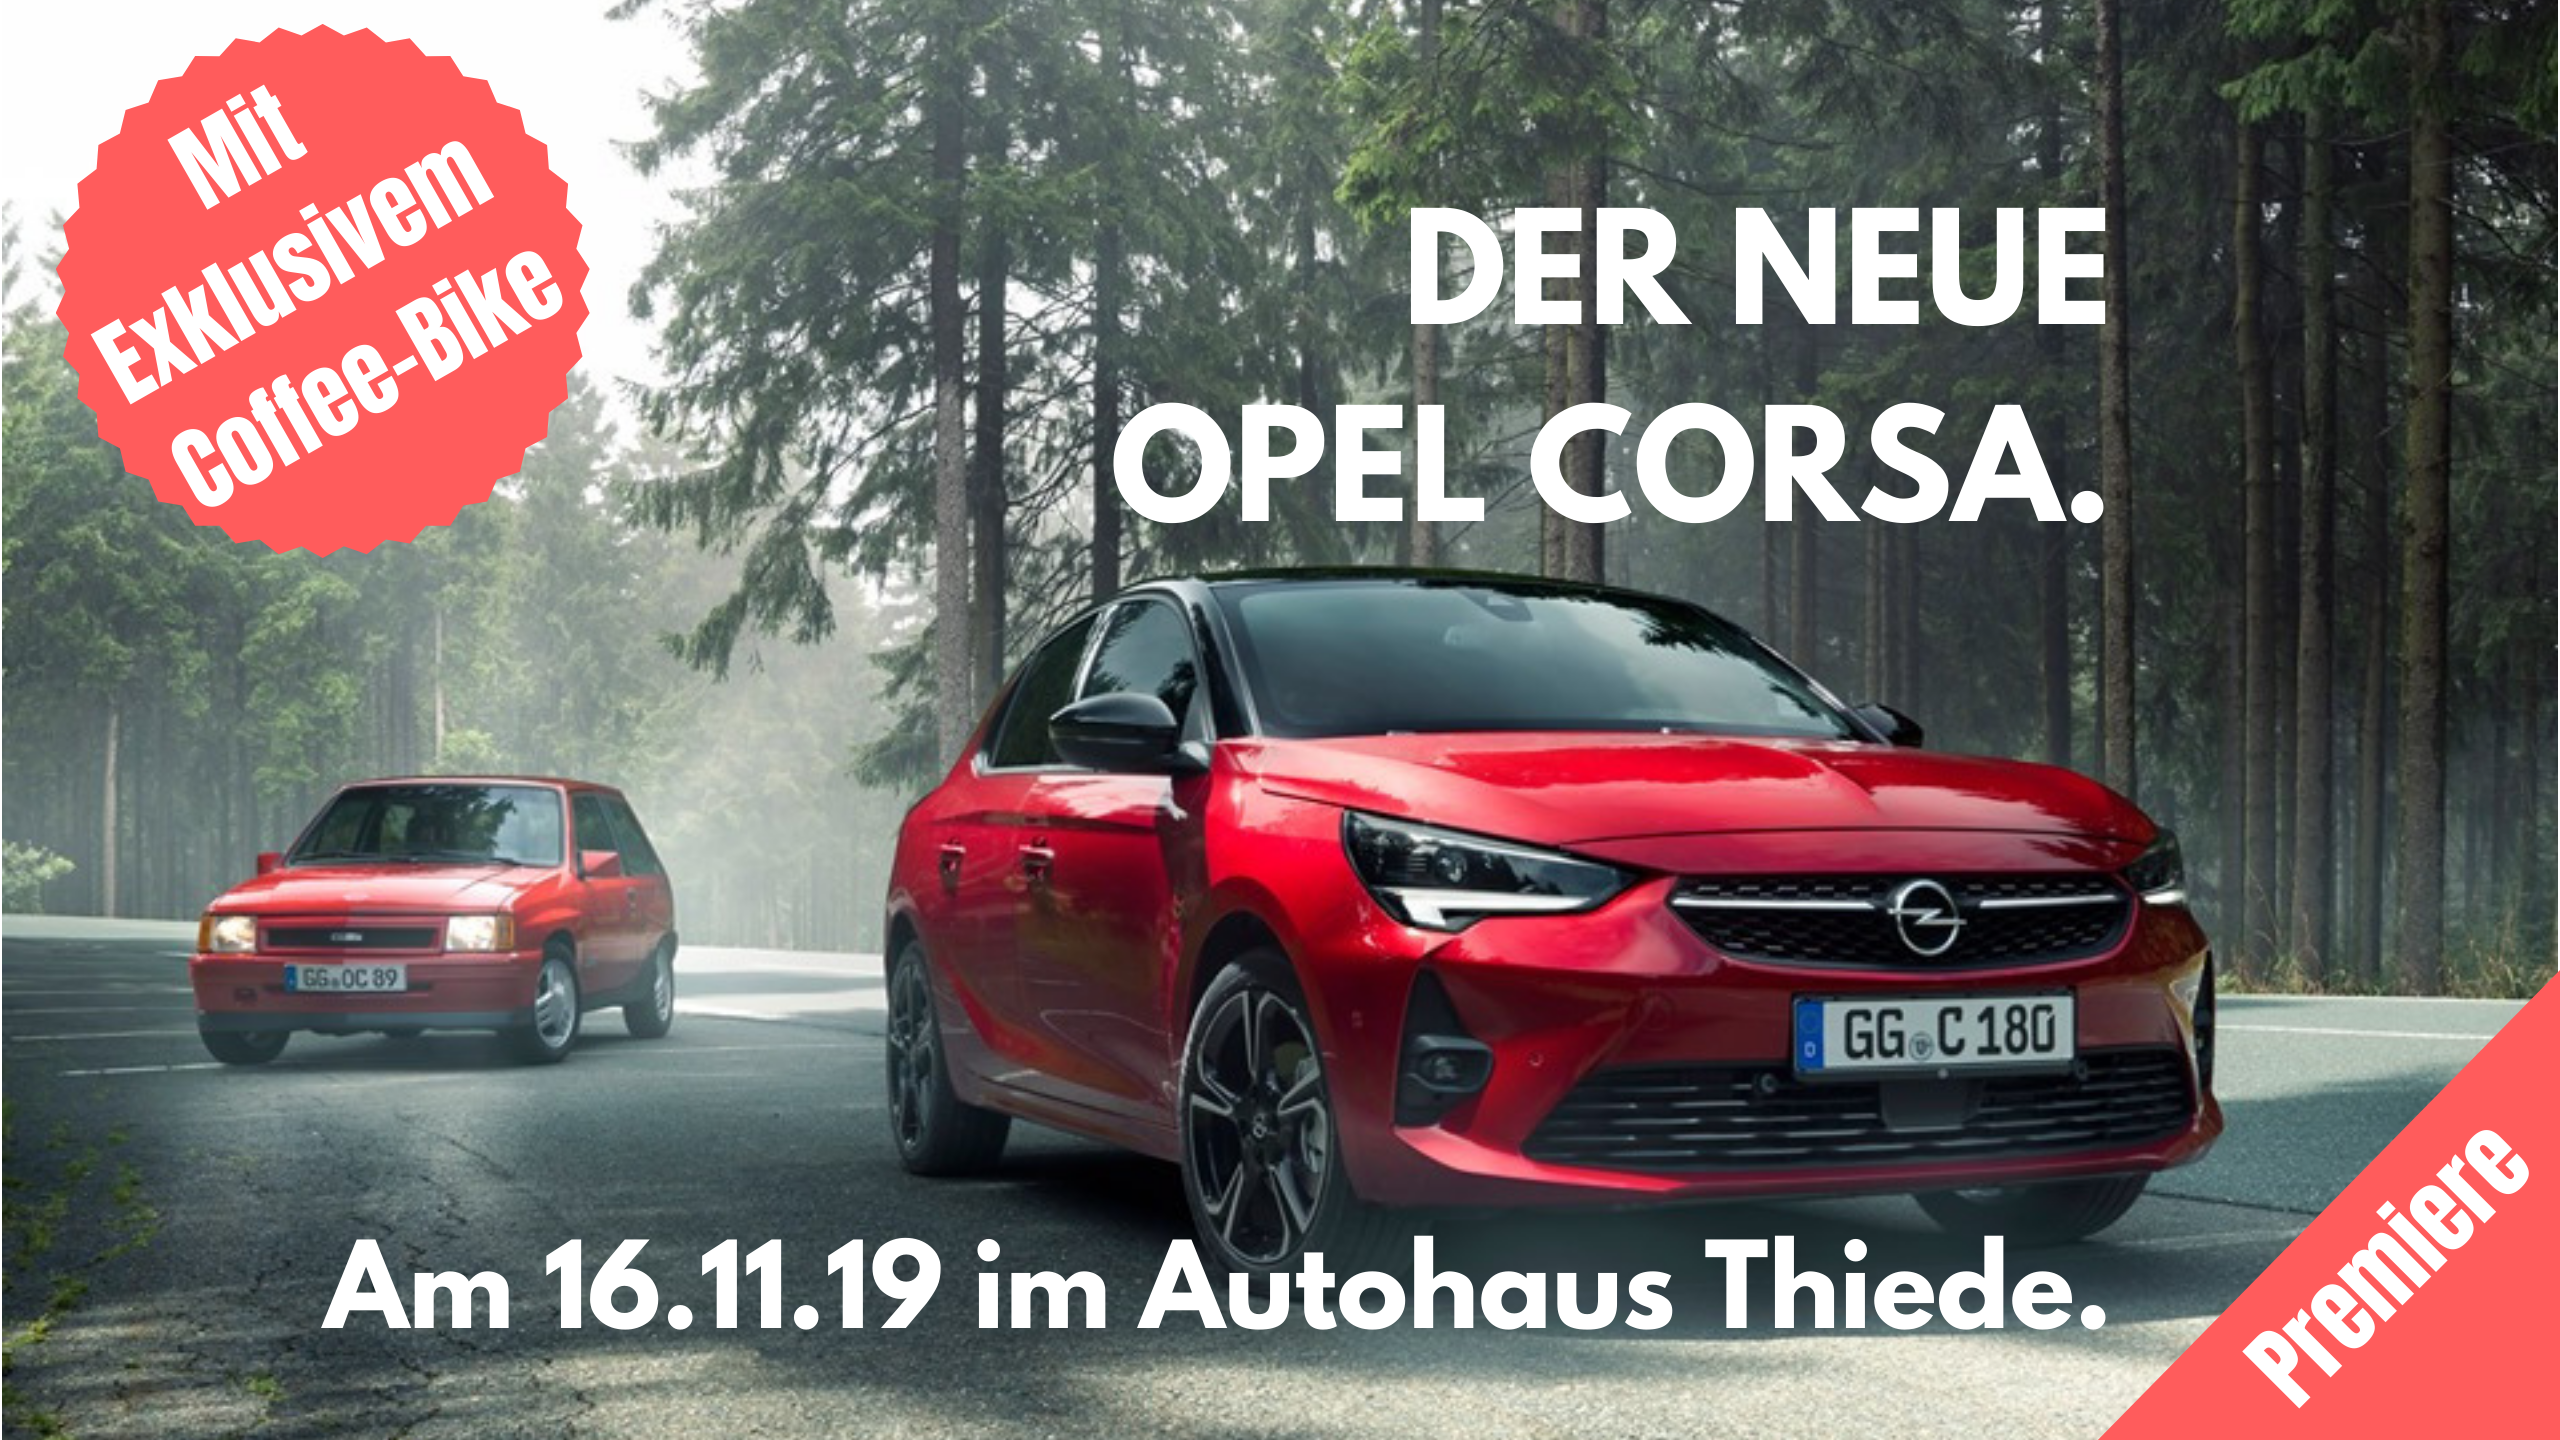 Opel Corsa Vorstellung am 16 November im Autohaus Thiede